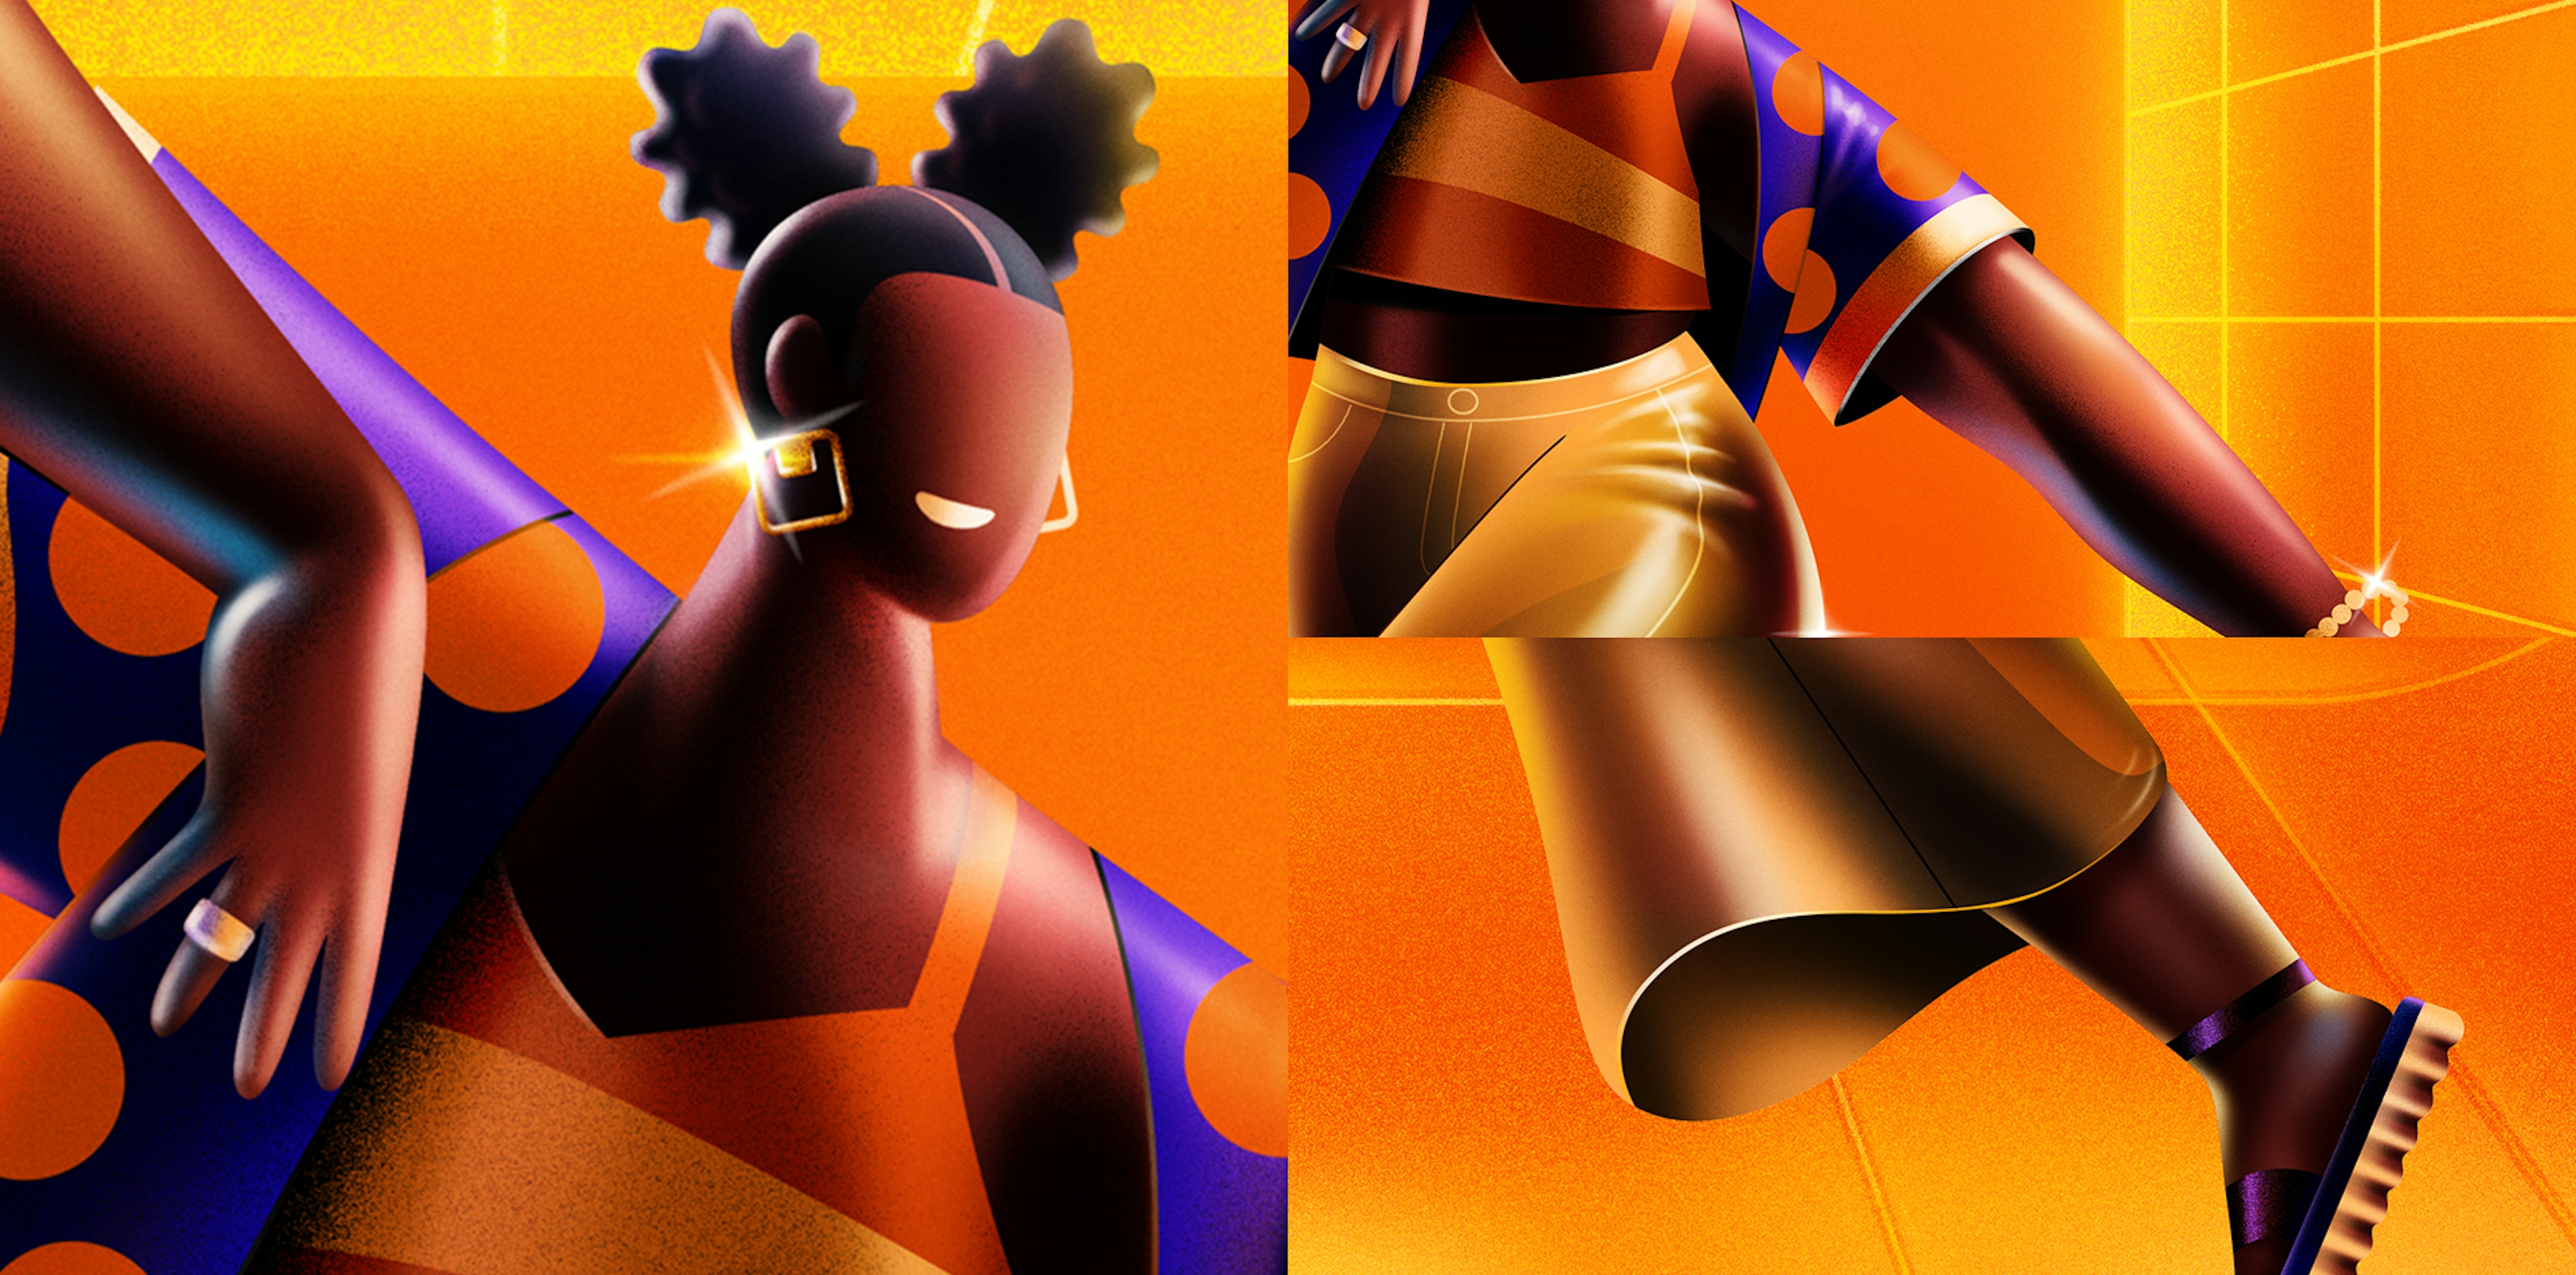 Detalhes da ilustração com a personagem feminina em um fundo laranja infinito